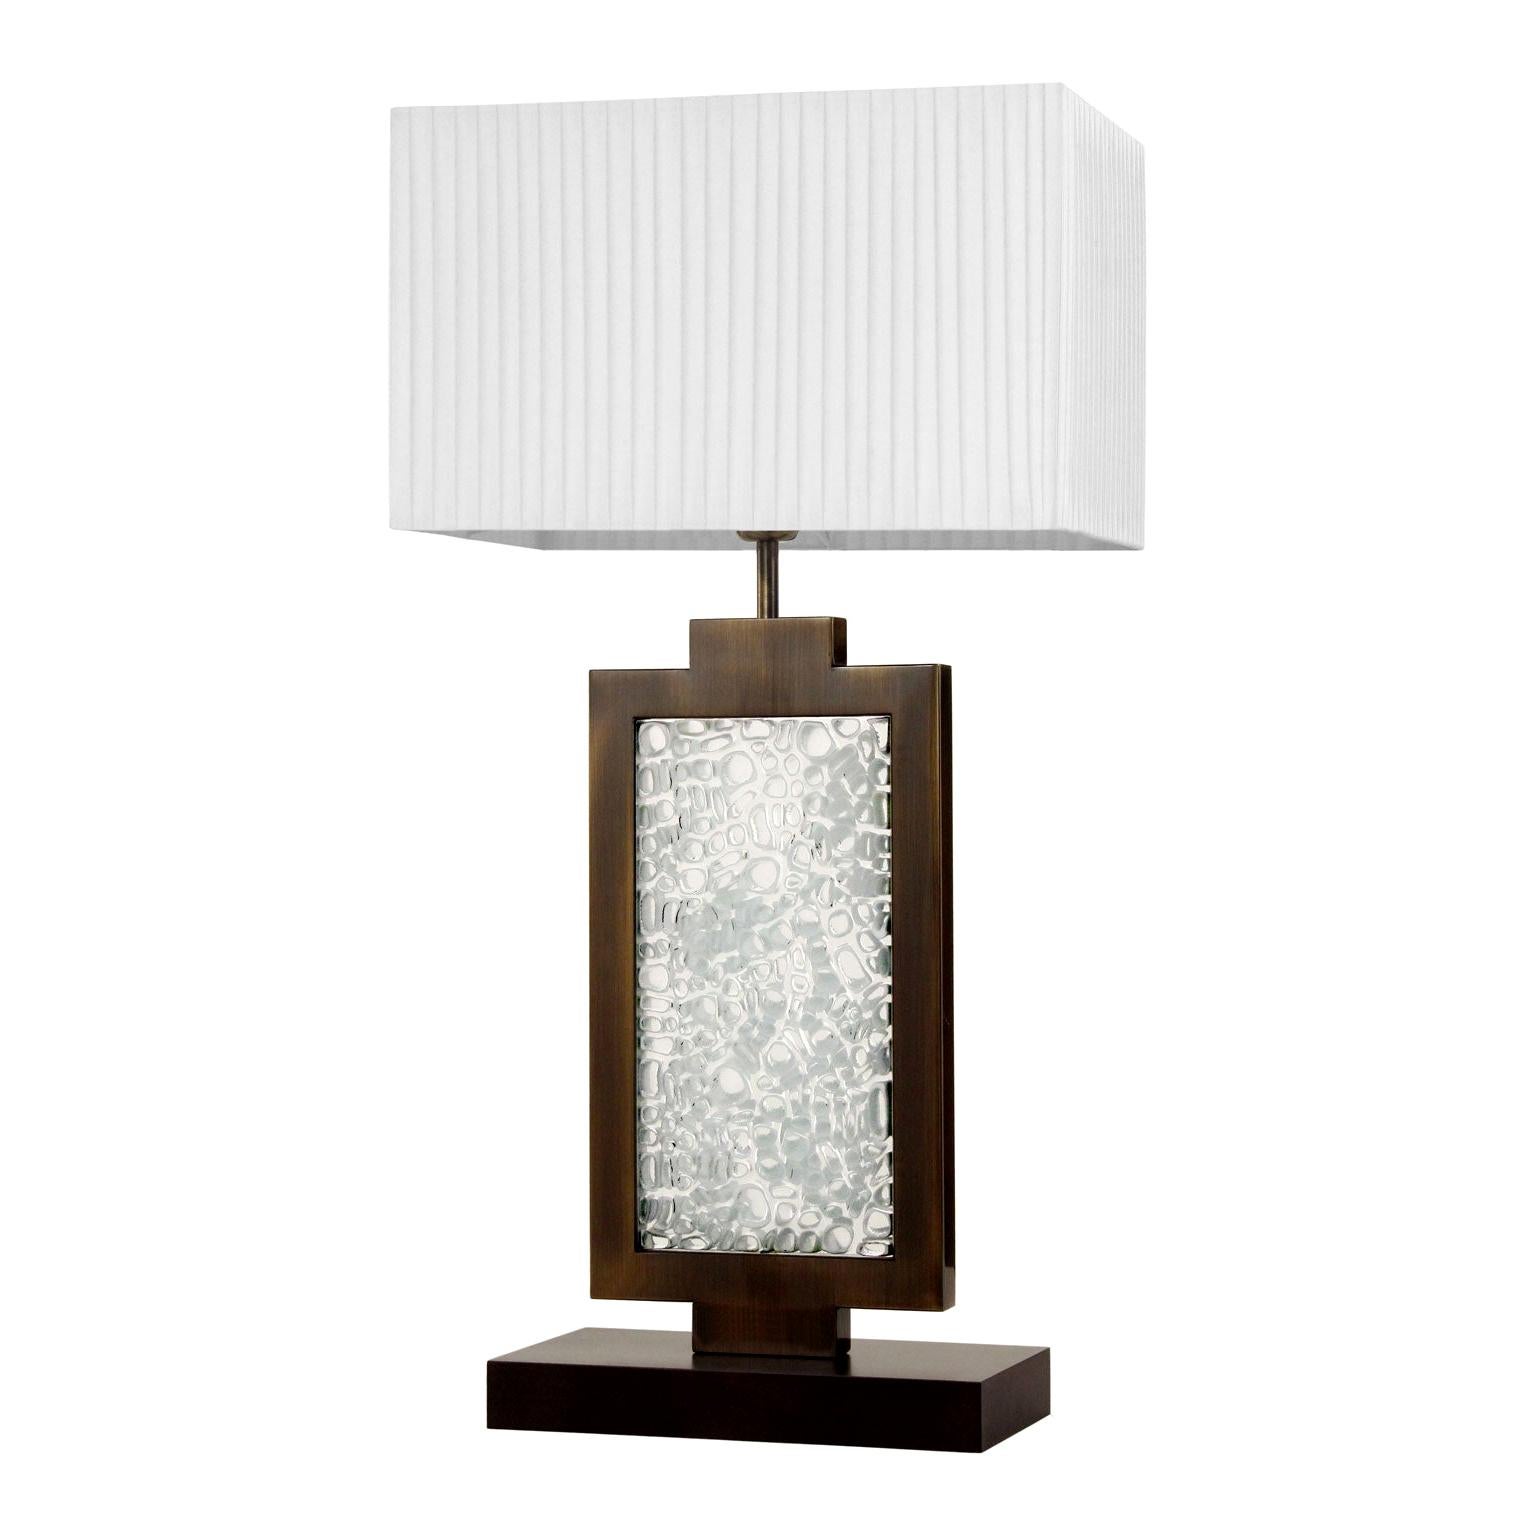 Lampe de bureau en verre de Murano de style artistique, abat-jour blanc par Multiforme, en stock